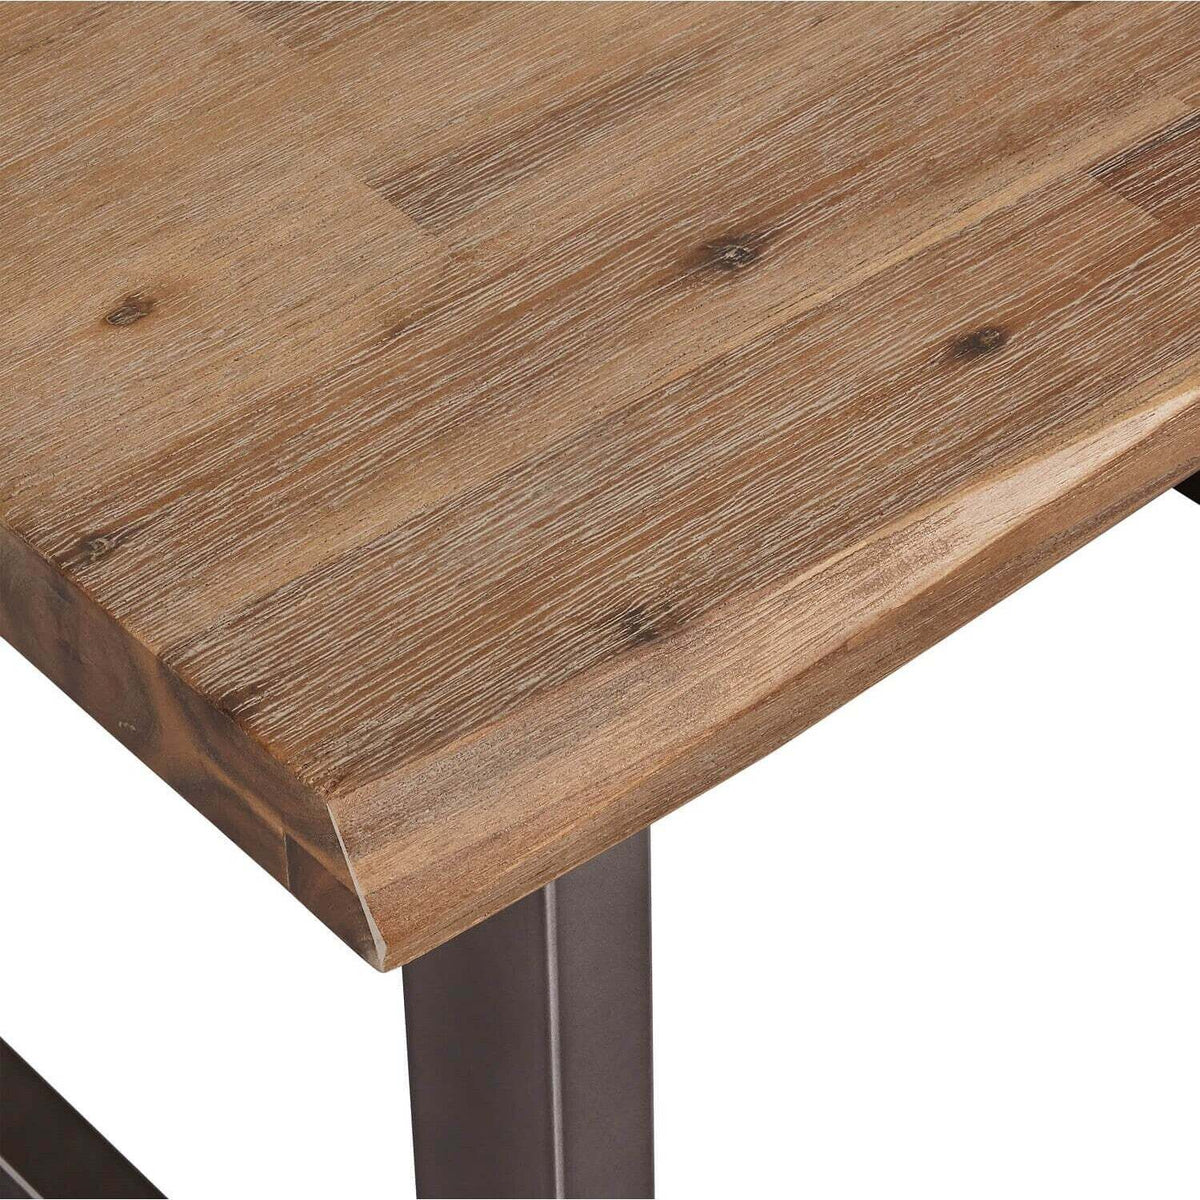 Konferenční stolek Sturla - 70x45x70 cm (hnědá)